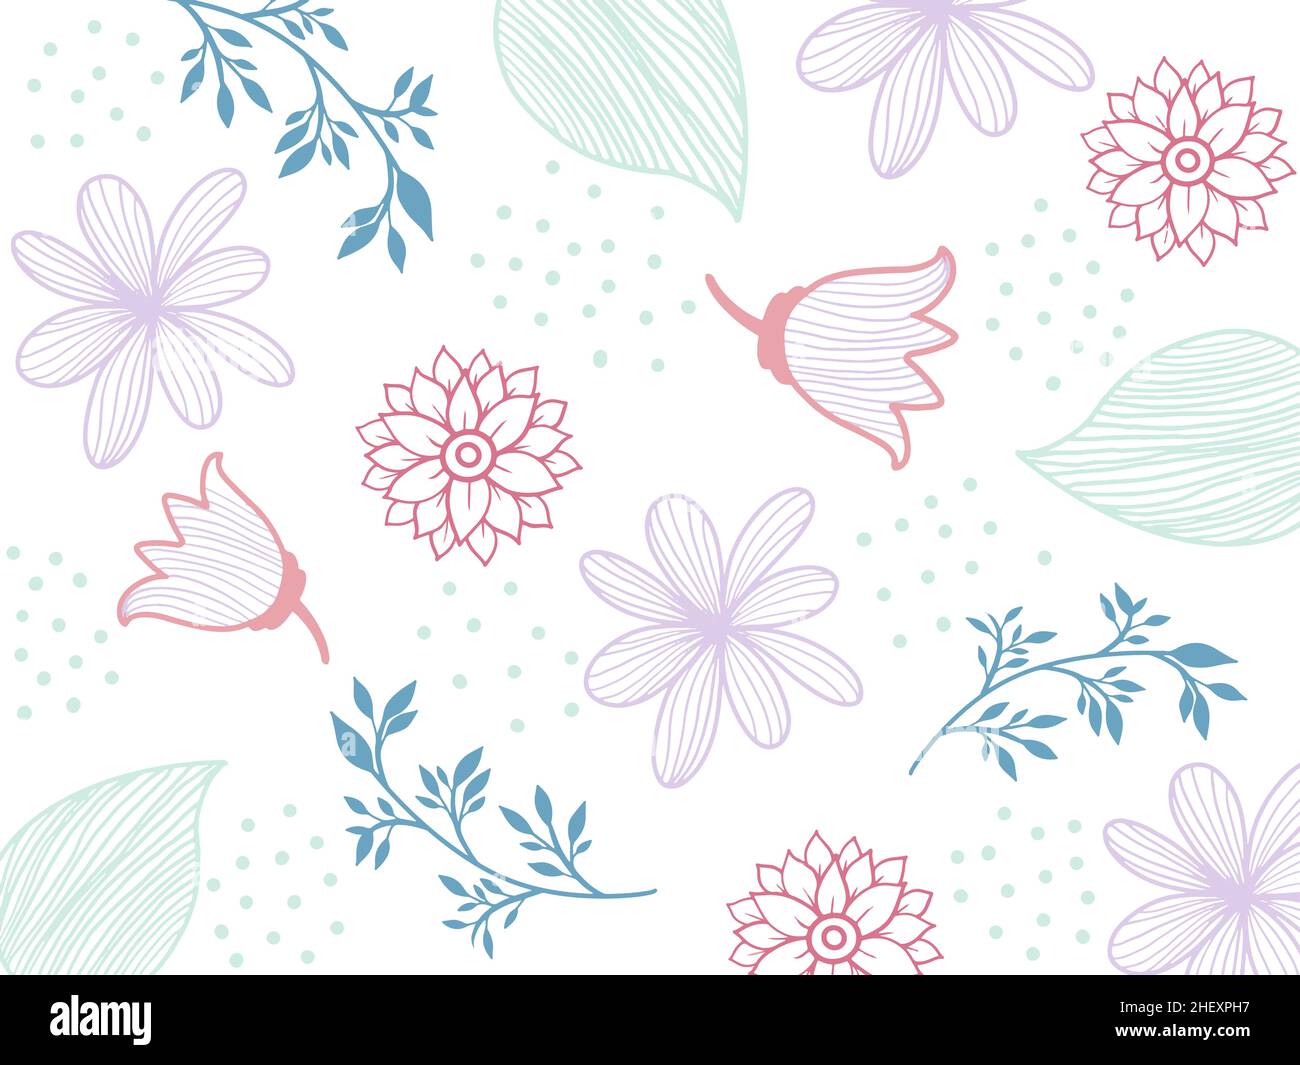 Blumen Nahtloses Muster. Weiße Silhouetten Blumen, Blätter, Zweige auf dunkelblauem Hintergrund. Vektorgrafik. Stock Vektor